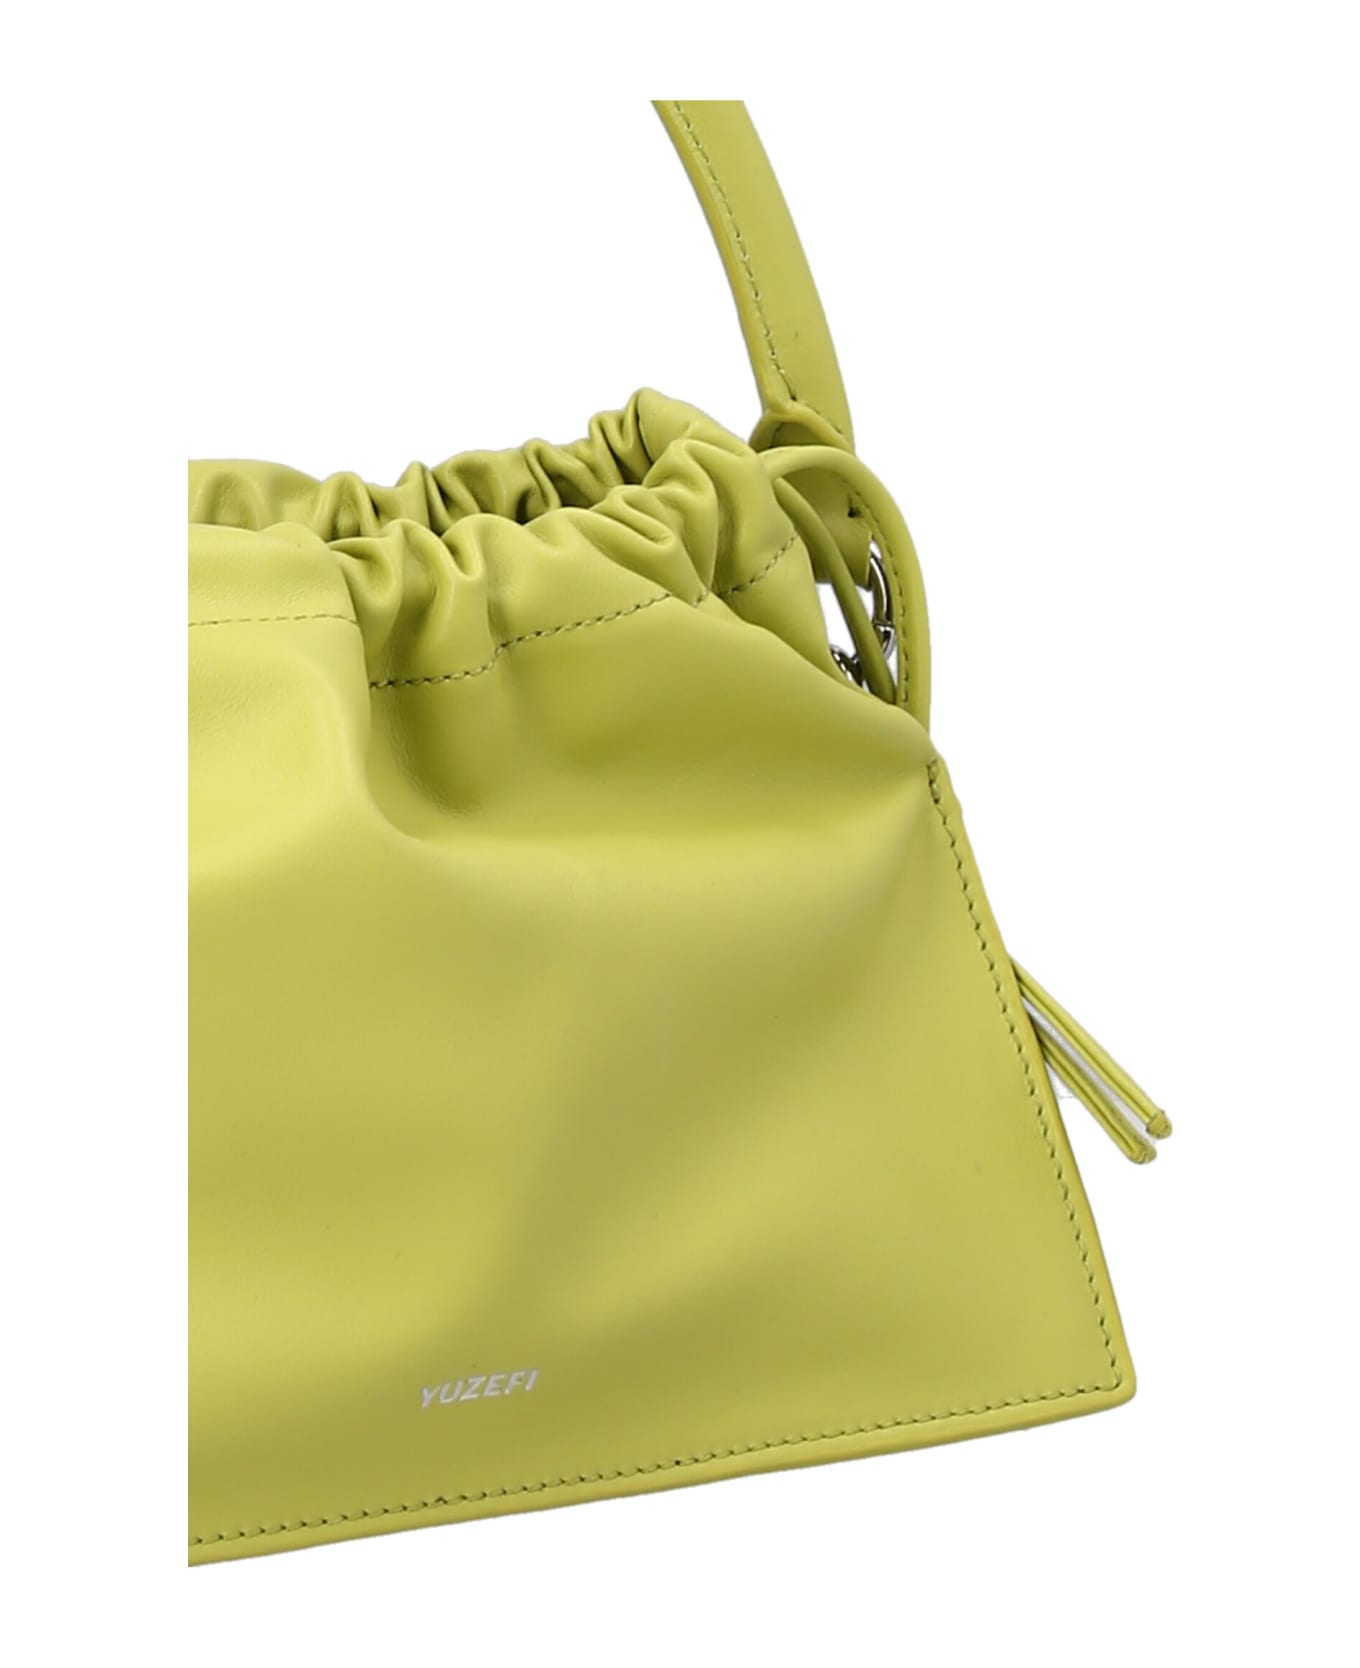 YUZEFI 'bom' Handbag - Green